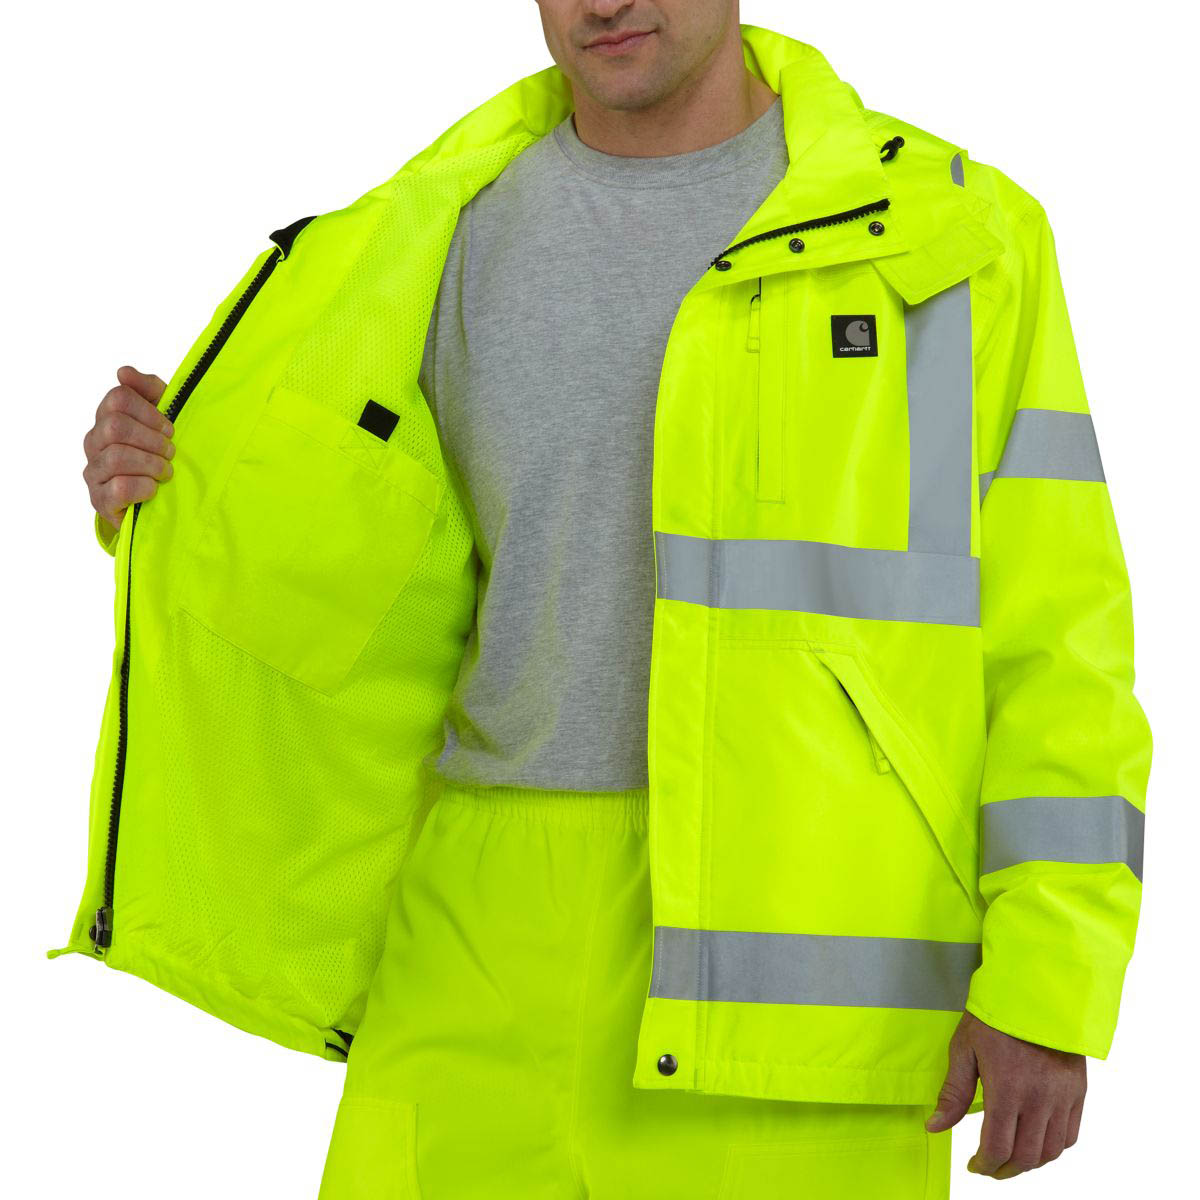 Carhartt Men's High Visibility Class 3 Waterproof Jacket